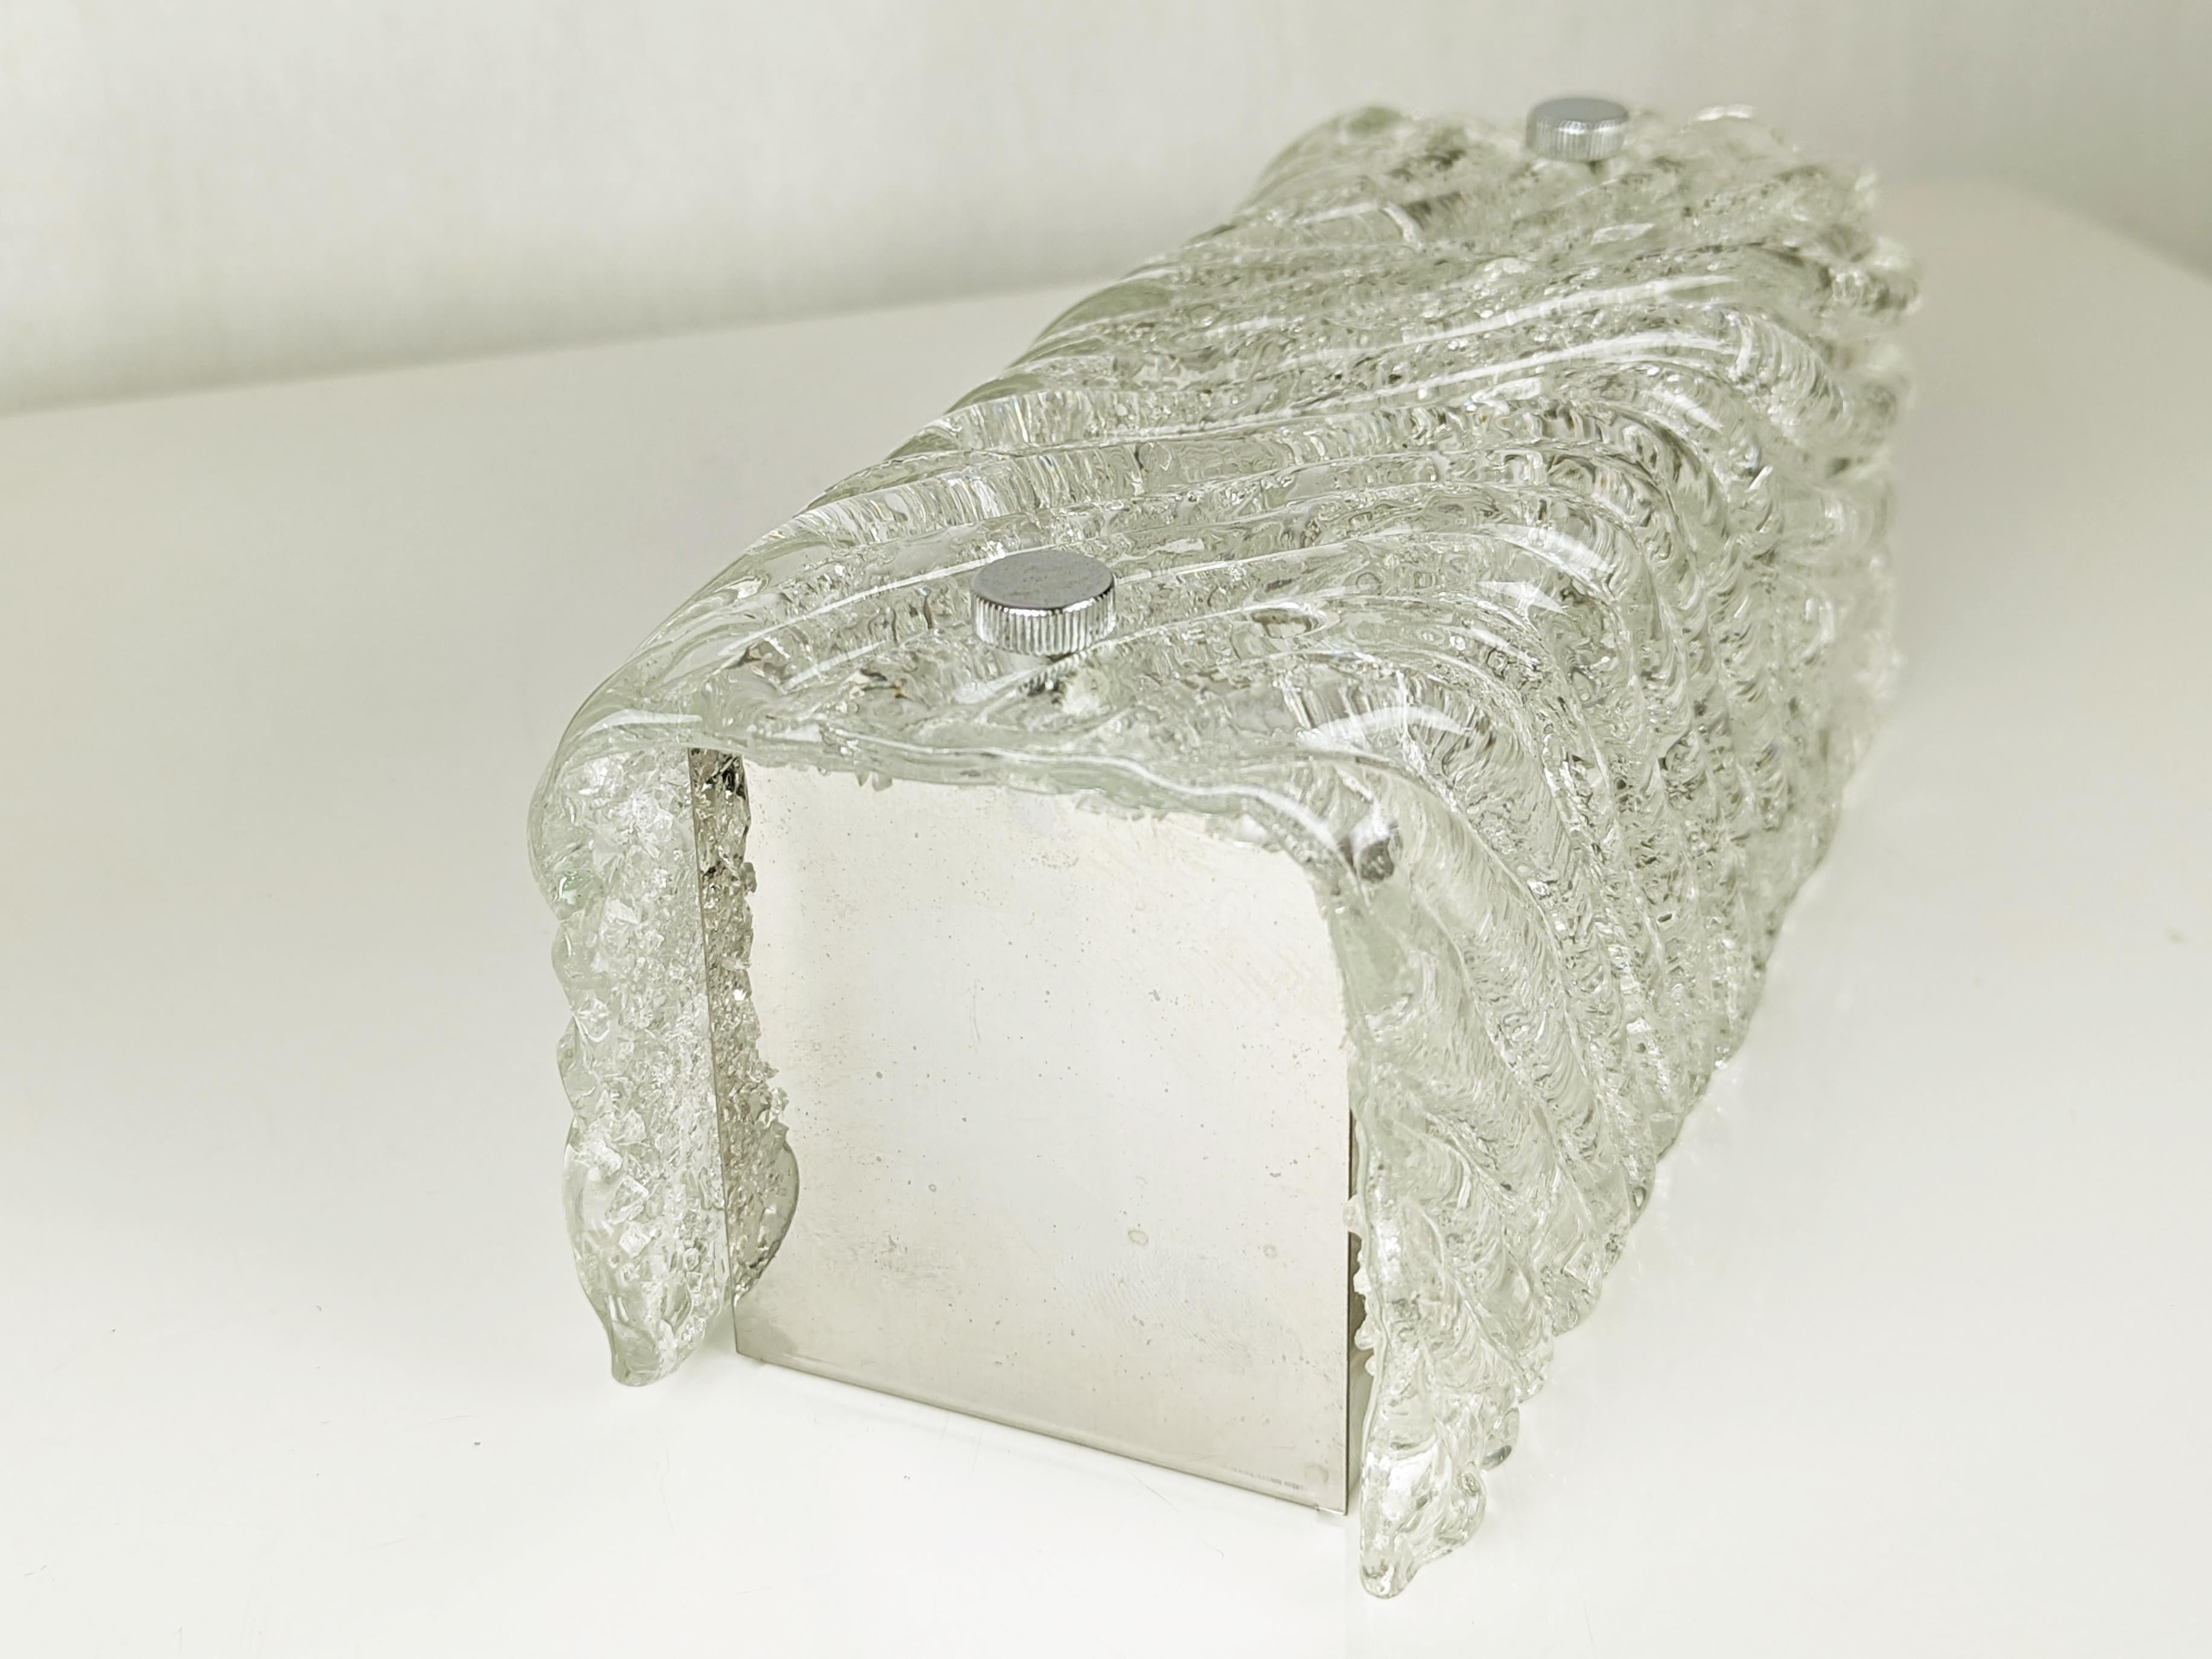 Petite applique ou plafonnier composé d'un abat-jour en verre clair de Murano et d'une structure en métal chromé. 
La qualité du verre rappelle les produits similaires fabriqués par Venini. Cette lampe est équipée d'une douille E27.
Très bon état